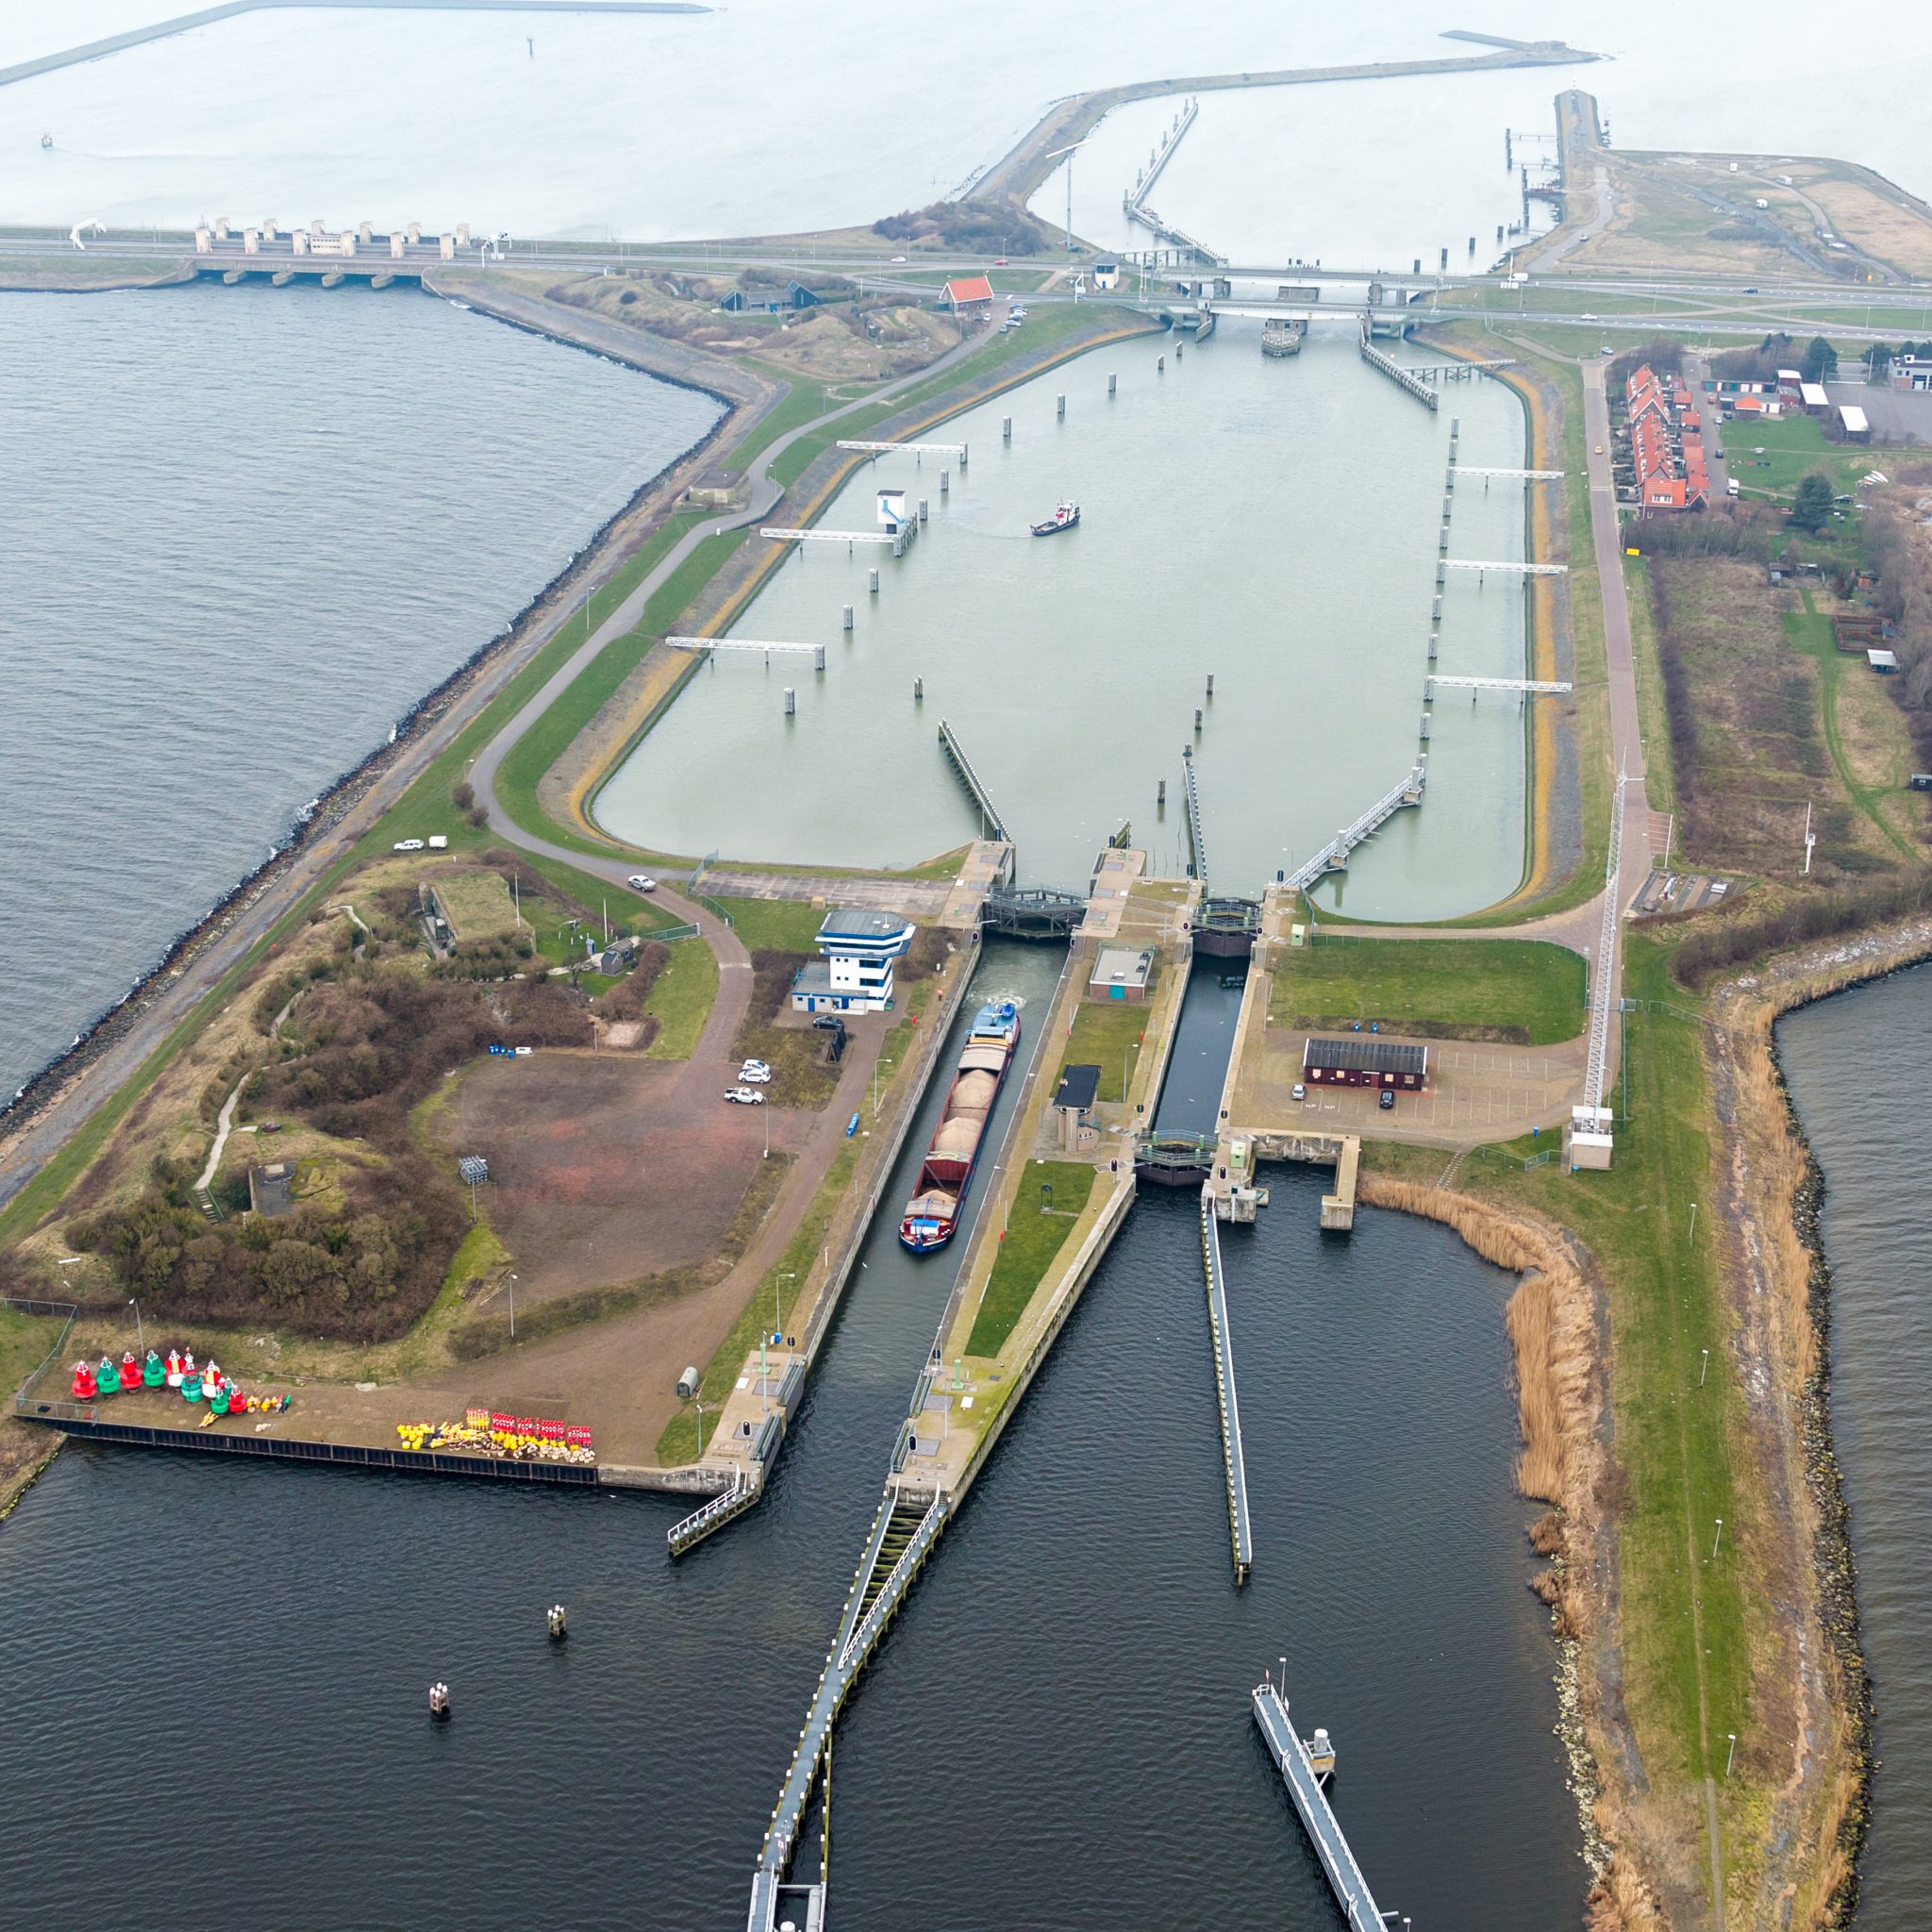 De doorgang van de sluis bij Kornwerderzand wordt breder, zodat er grotere schepen doorheen kunnen varen. (Archieffoto Witteveen en Bos)